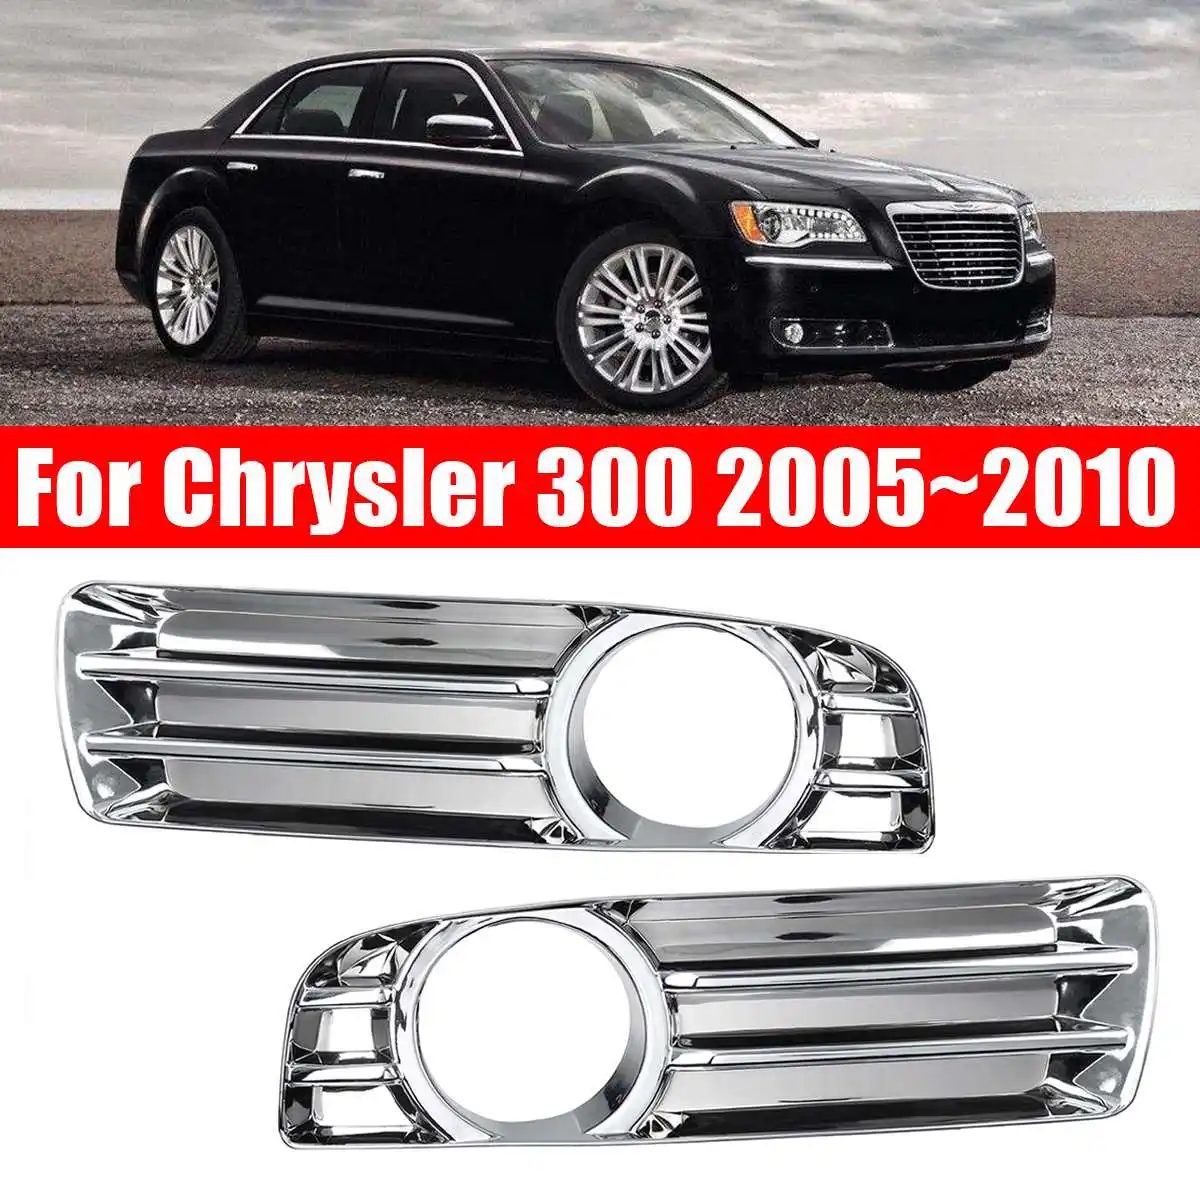 1 пара Хром левый и правый Серебряный автомобильный передний бампер решетка гриль, хром противотуманная фара чехол для Chrysler 300 2005-2010